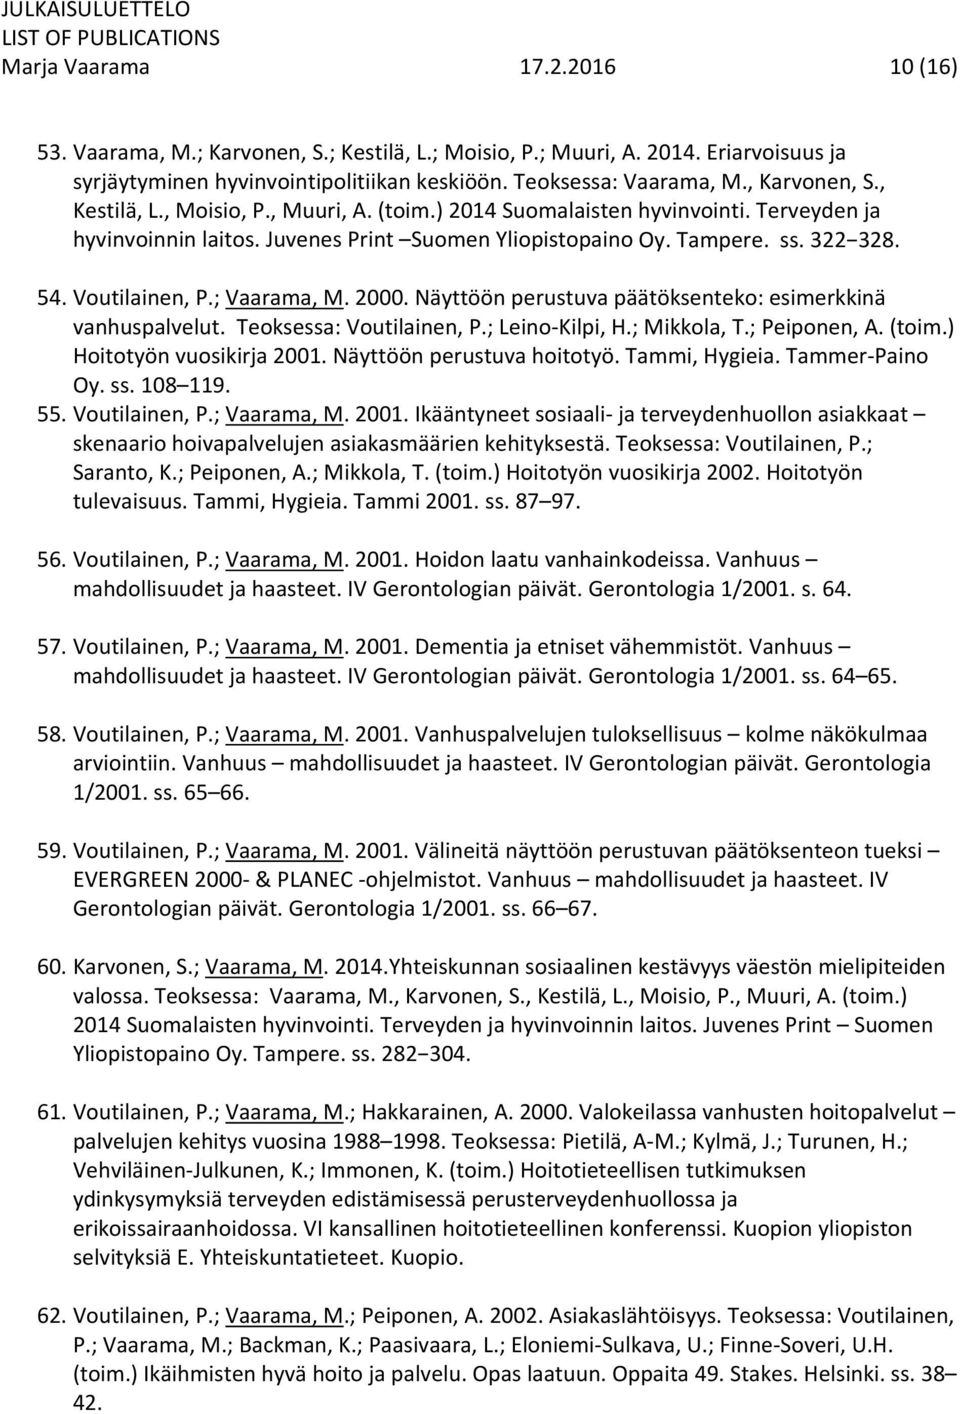 Voutilainen, P.; Vaarama, M. 2000. Näyttöön perustuva päätöksenteko: esimerkkinä vanhuspalvelut. Teoksessa: Voutilainen, P.; Leino Kilpi, H.; Mikkola, T.; Peiponen, A. (toim.